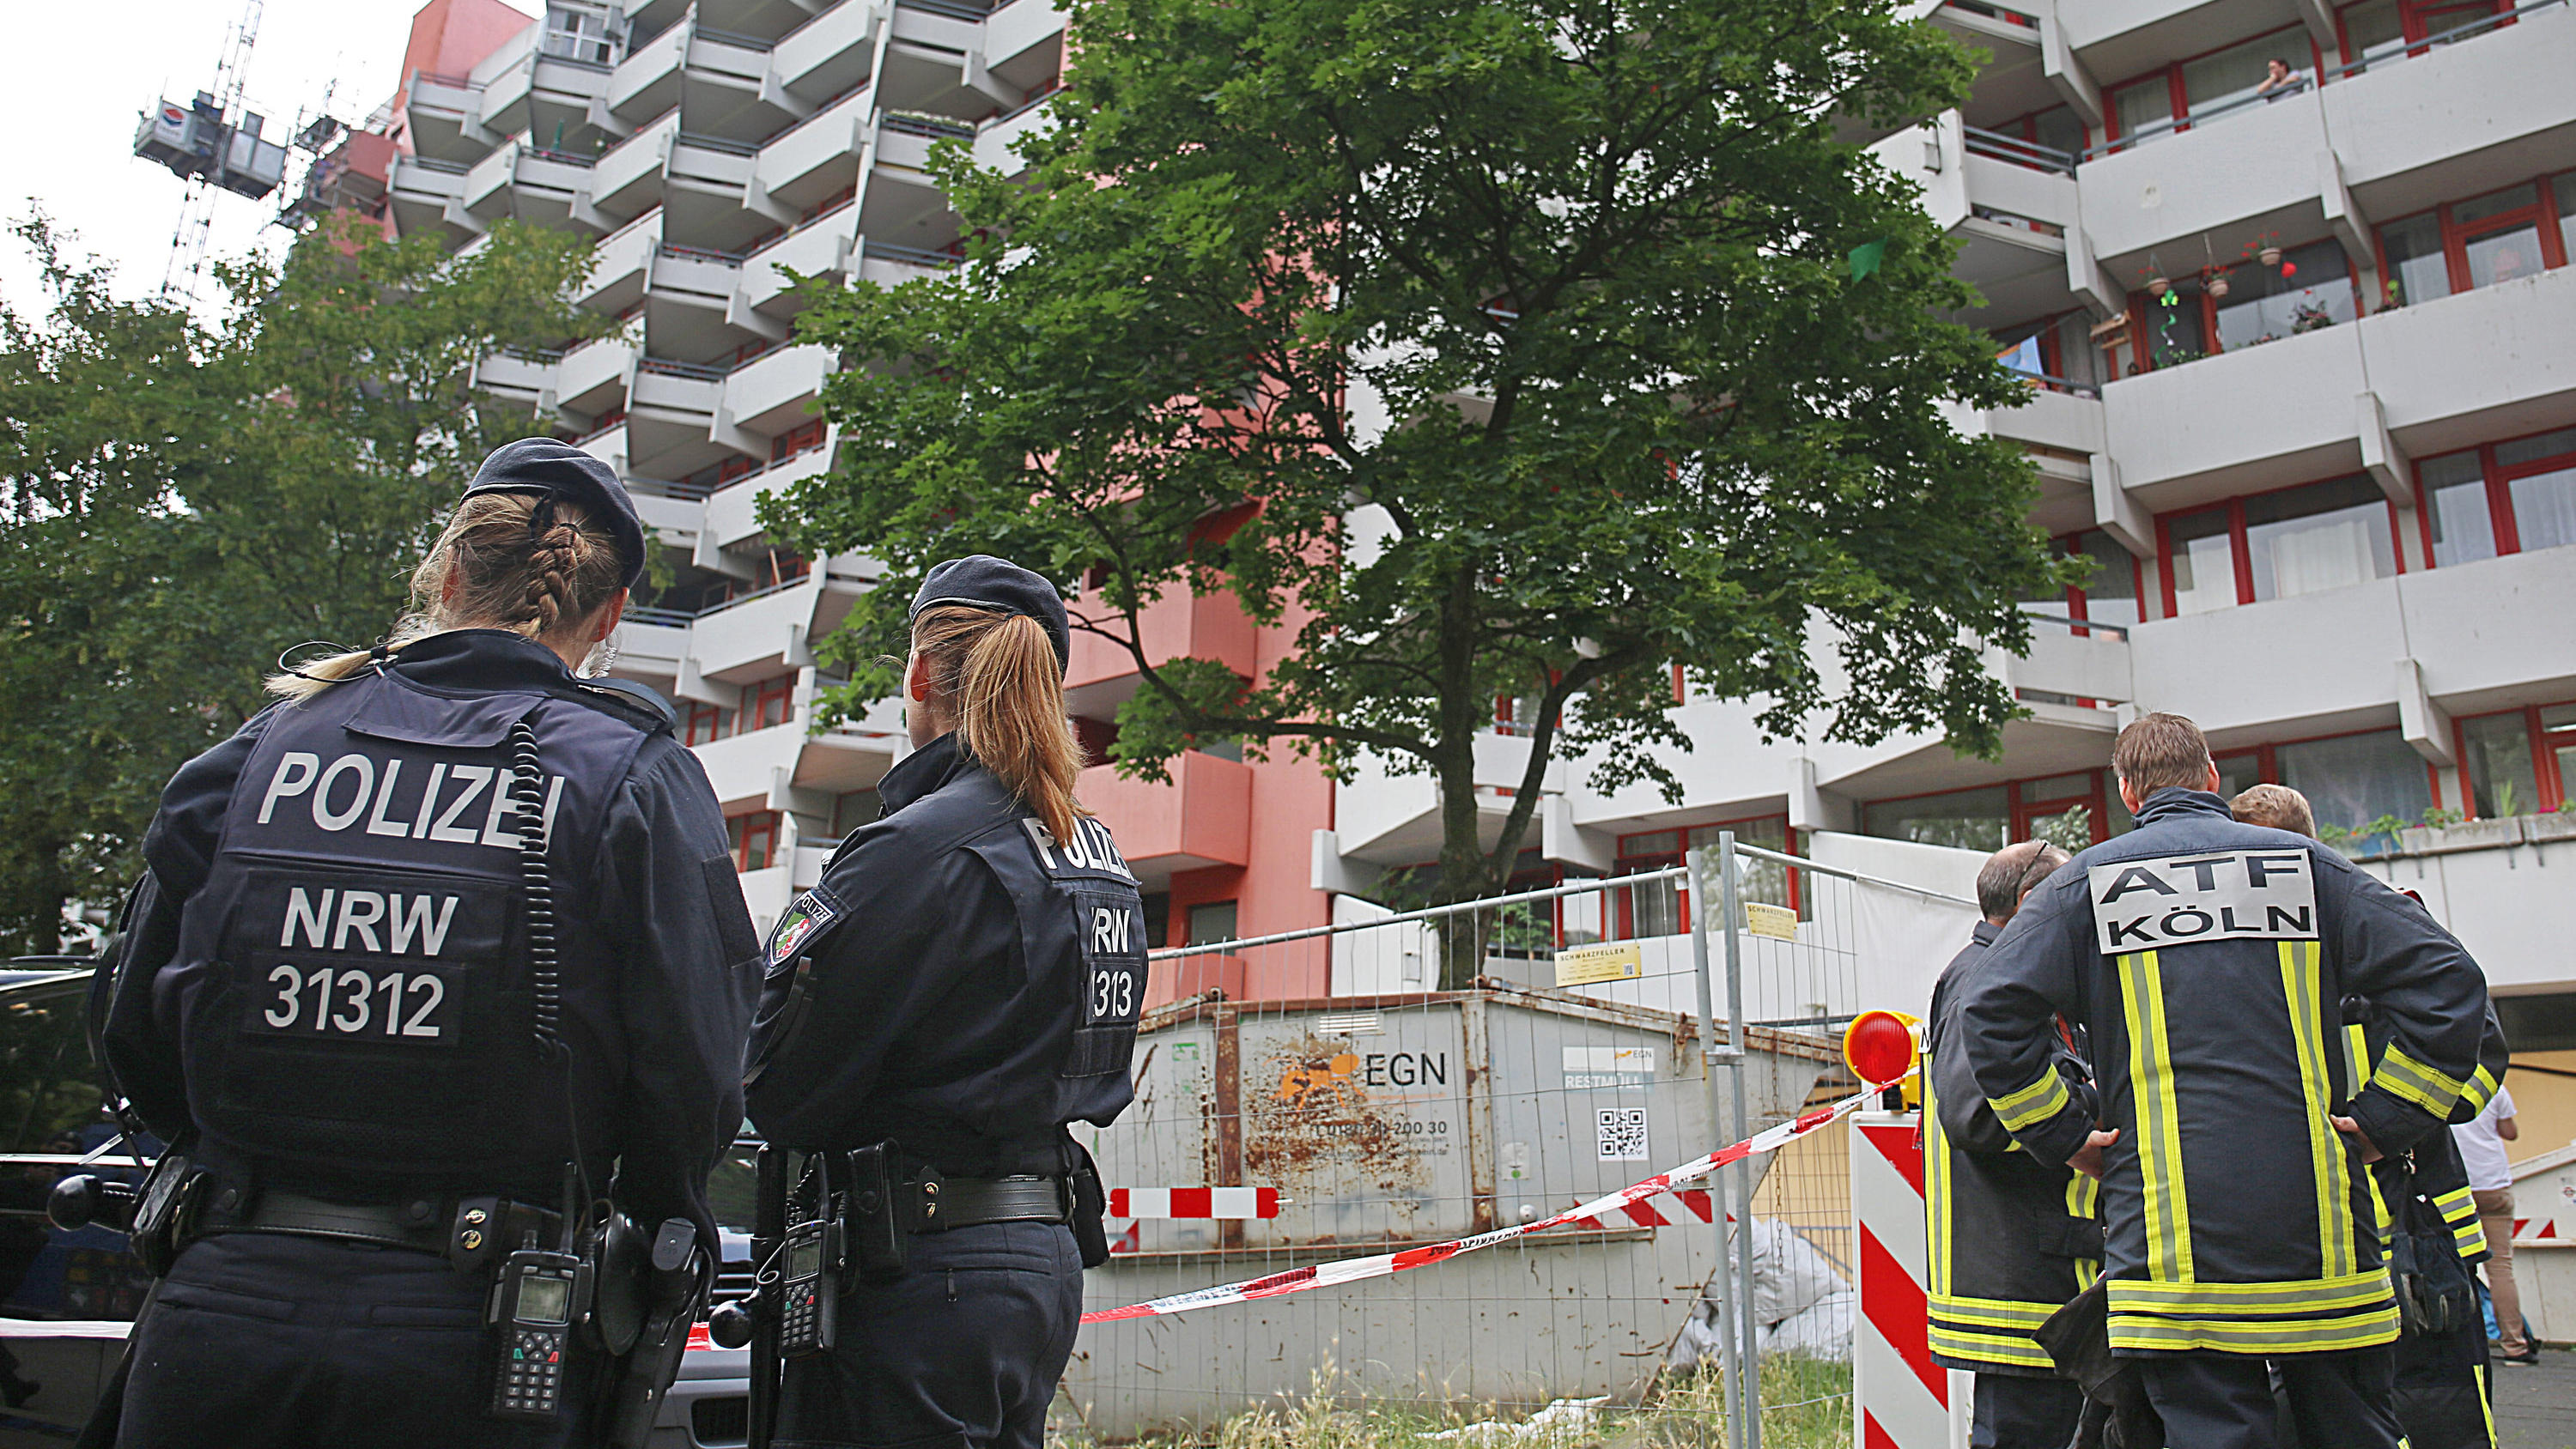 15.06.2018, Nordrhein-Westfalen, Köln: Polizisten und Feuerwehrleute stehen vor dem Wohnkomplex Osloerstr. 3 in Köln-Chorweiler. Nach dem Fund von hochgiftigem Rizin in einem Hochhaus in Köln will die Polizei am Freitagmorgen mehrere leerstehende Woh